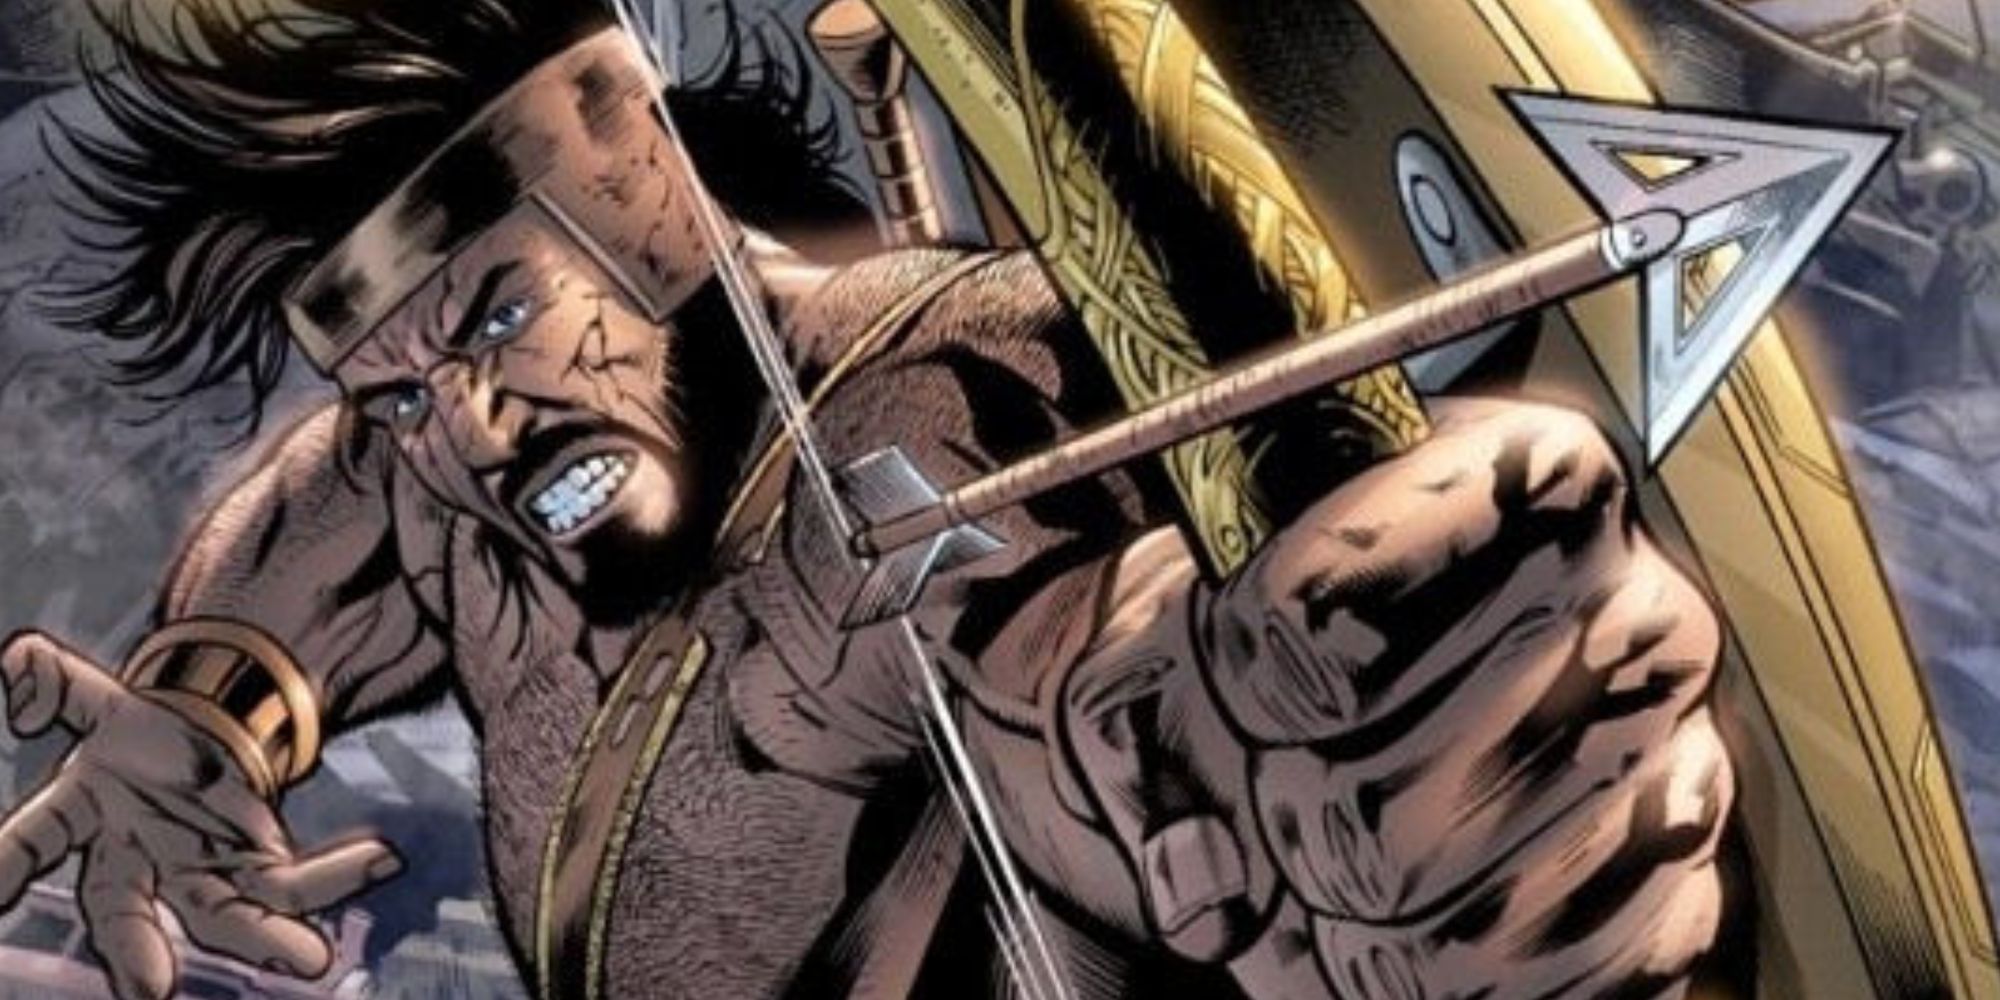 Hercules firing an arrrow in Marvel comics